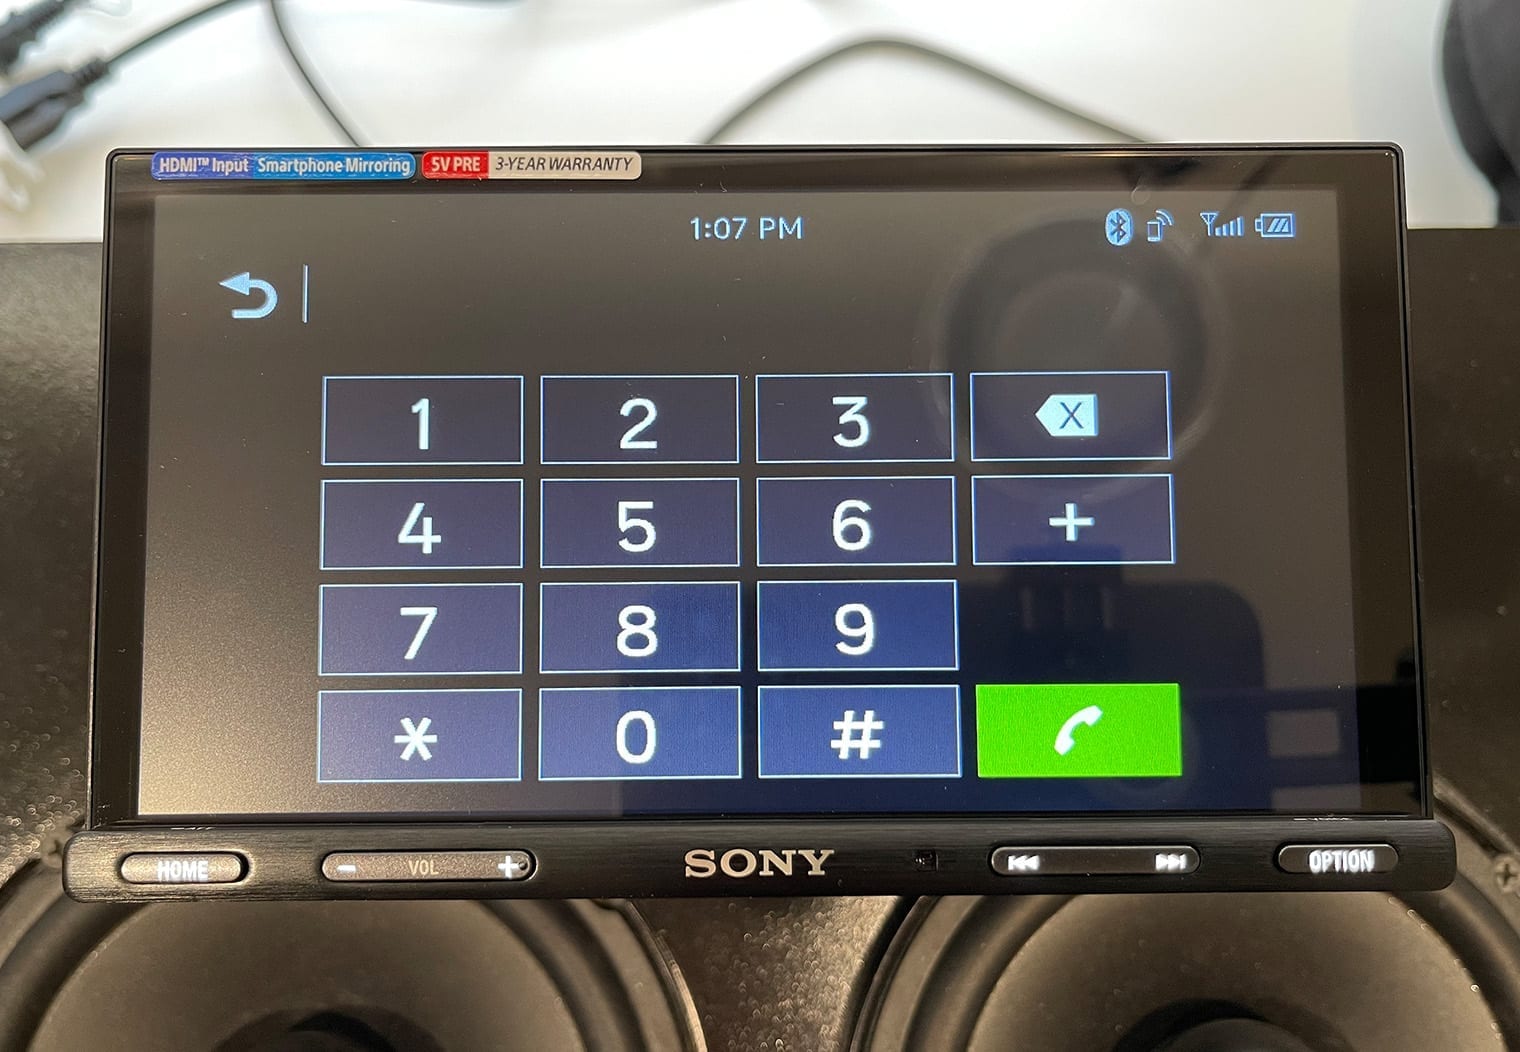 Sony XAV-AX5600 phone keypad